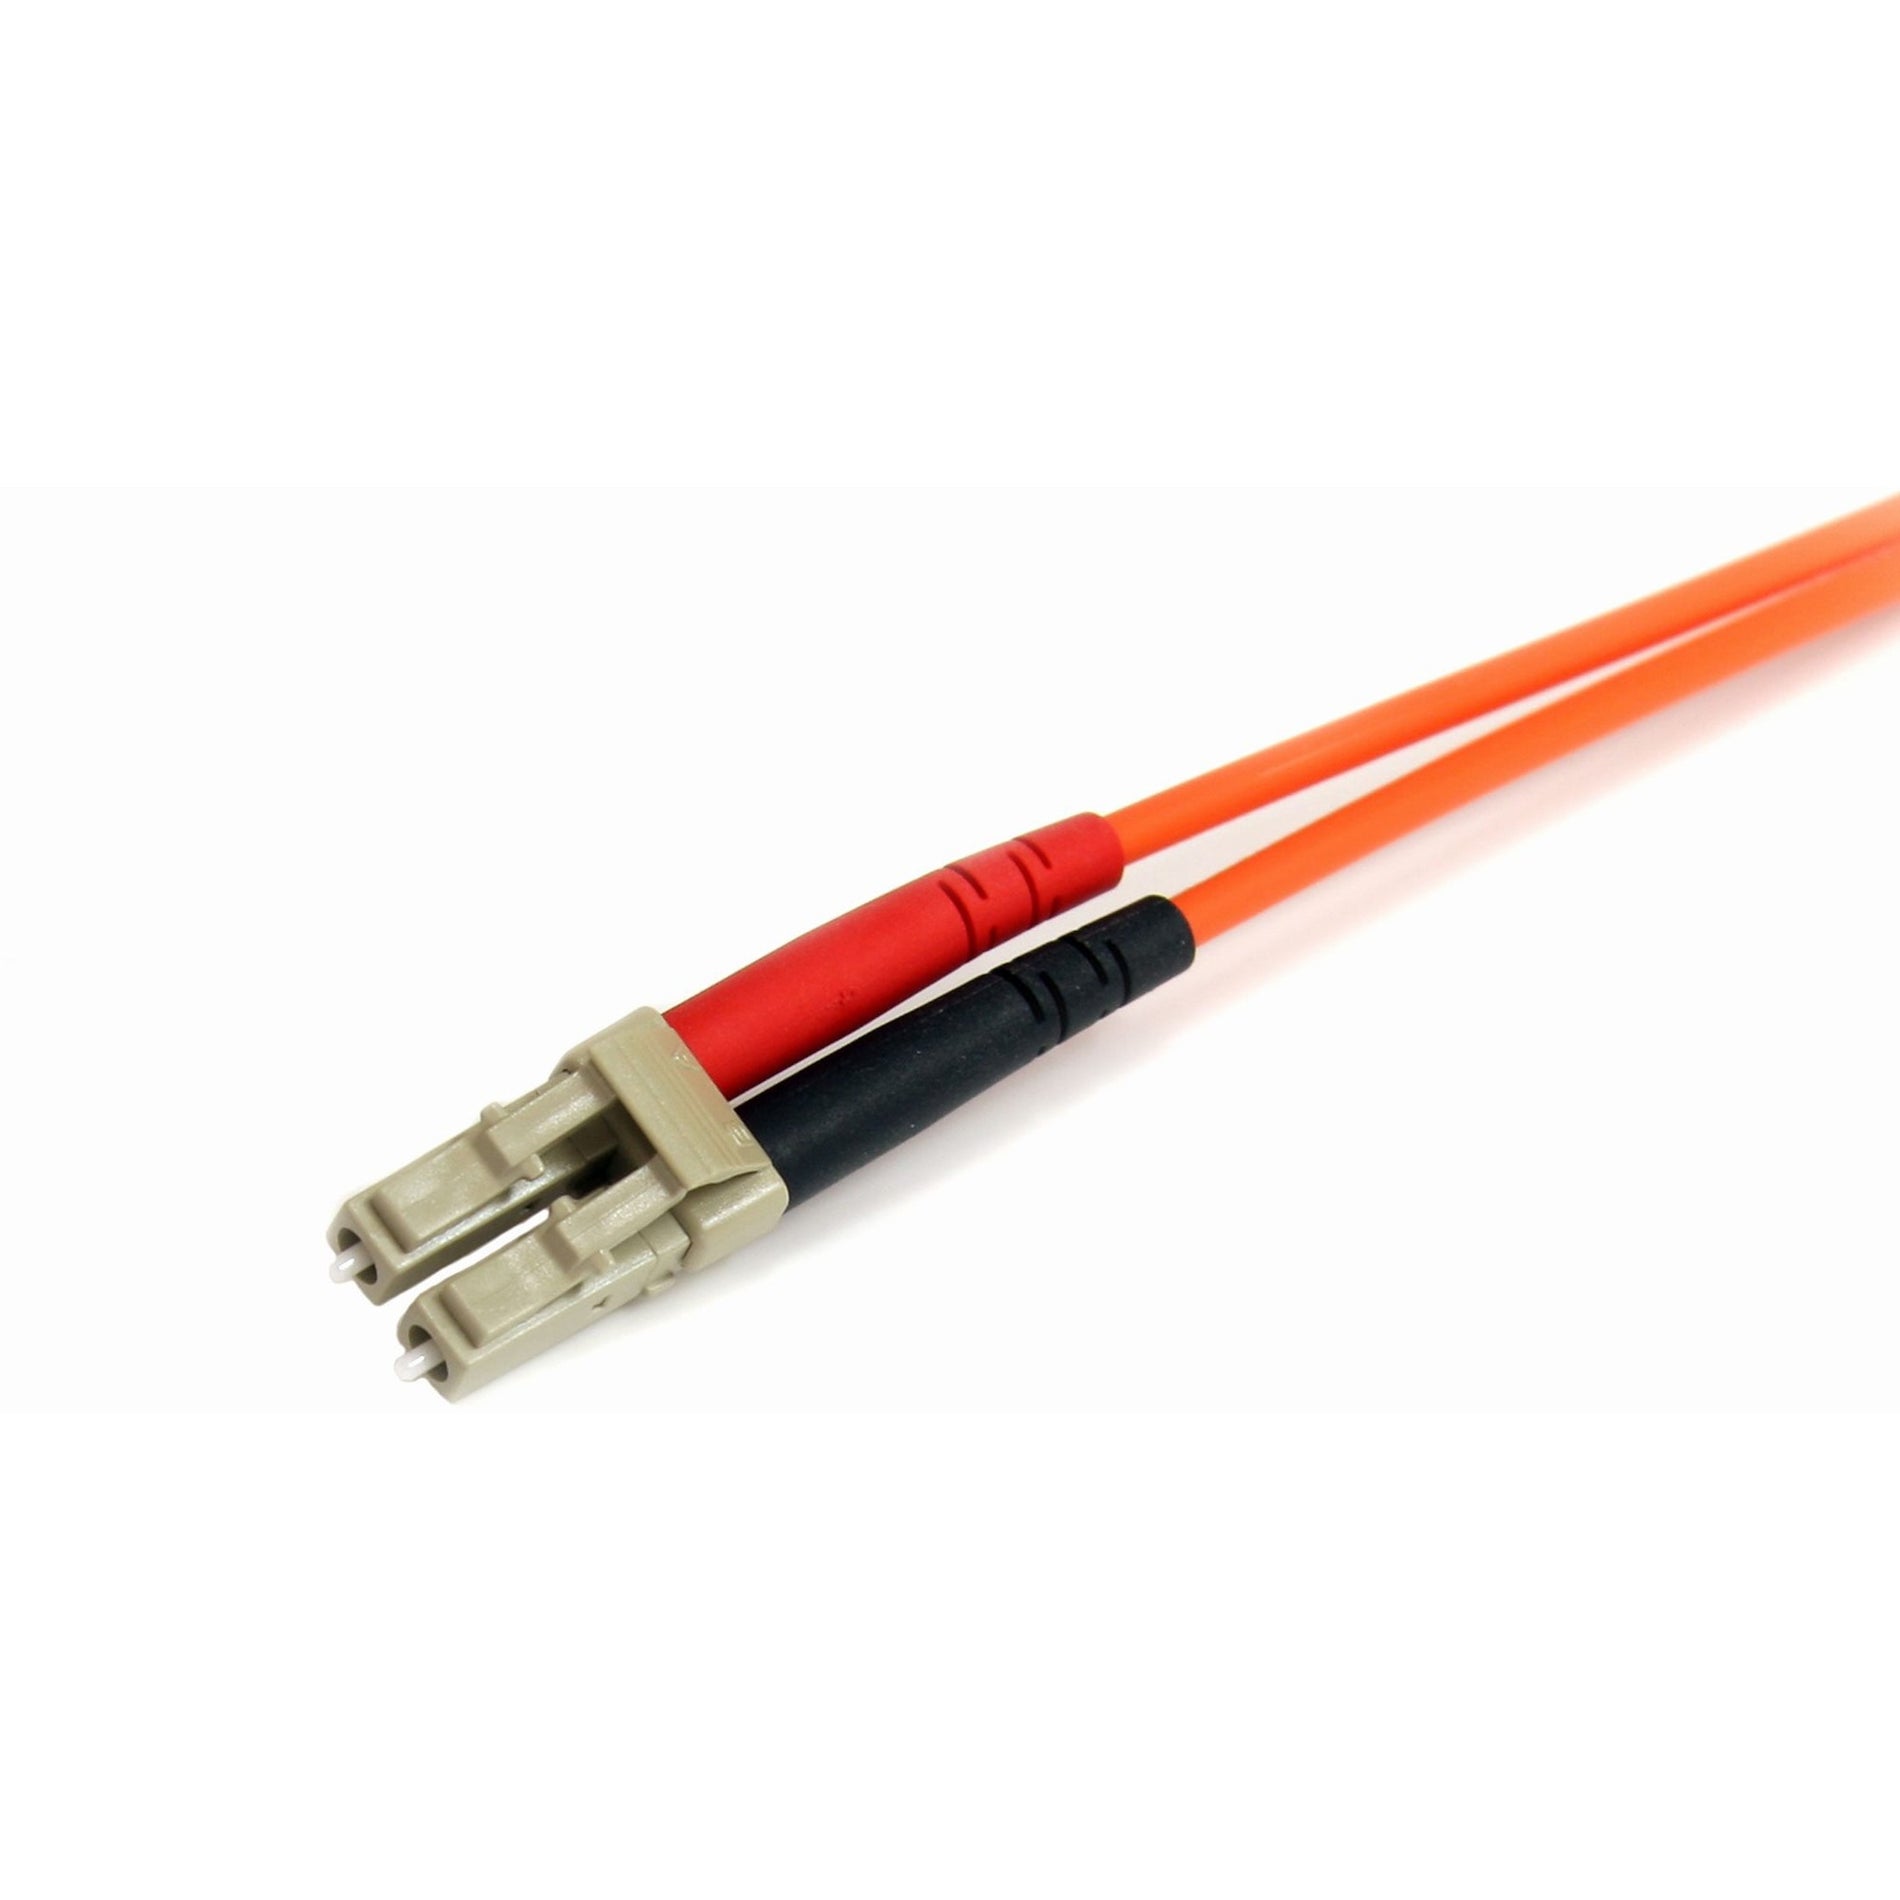 StarTech.com FIBLCST3 3m Multimode 62.5/125 Duplex Fiber Patch Cable LC-ST, 10 Gbit/s Data Transfer Rate, Orange